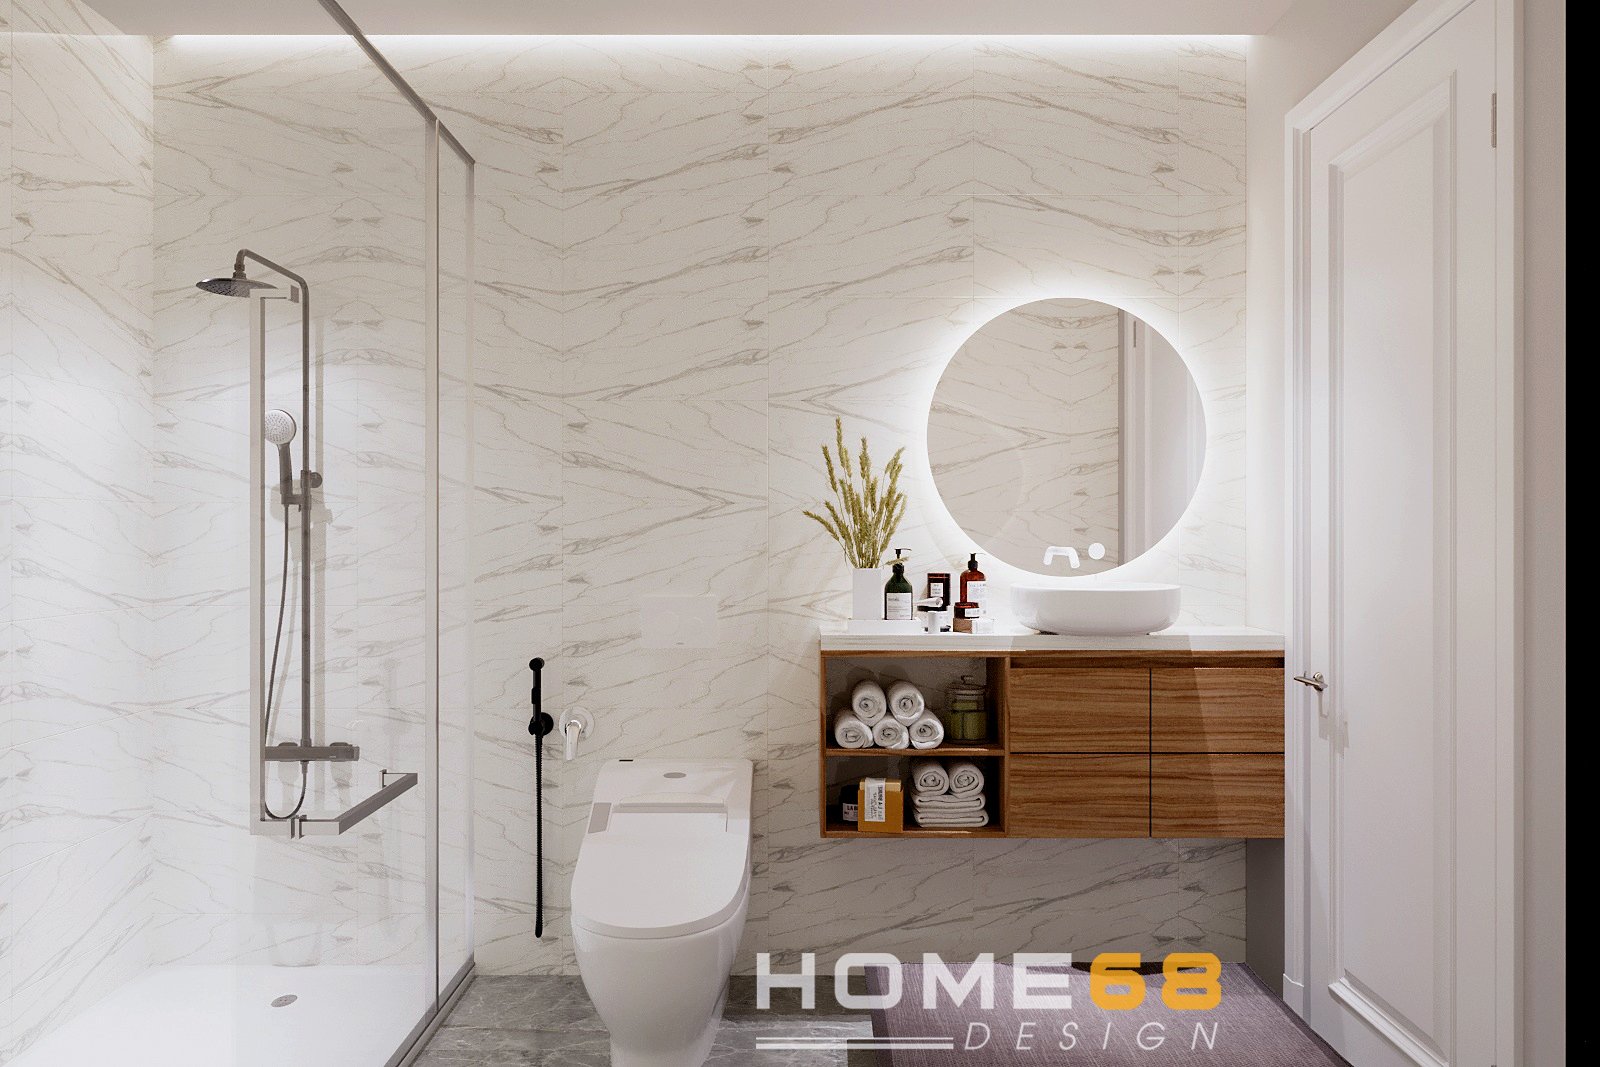 HOME68 thiết kế nội thất nhà vệ sinh tầng 2 hiện đại với gam màu trắng thanh lịch